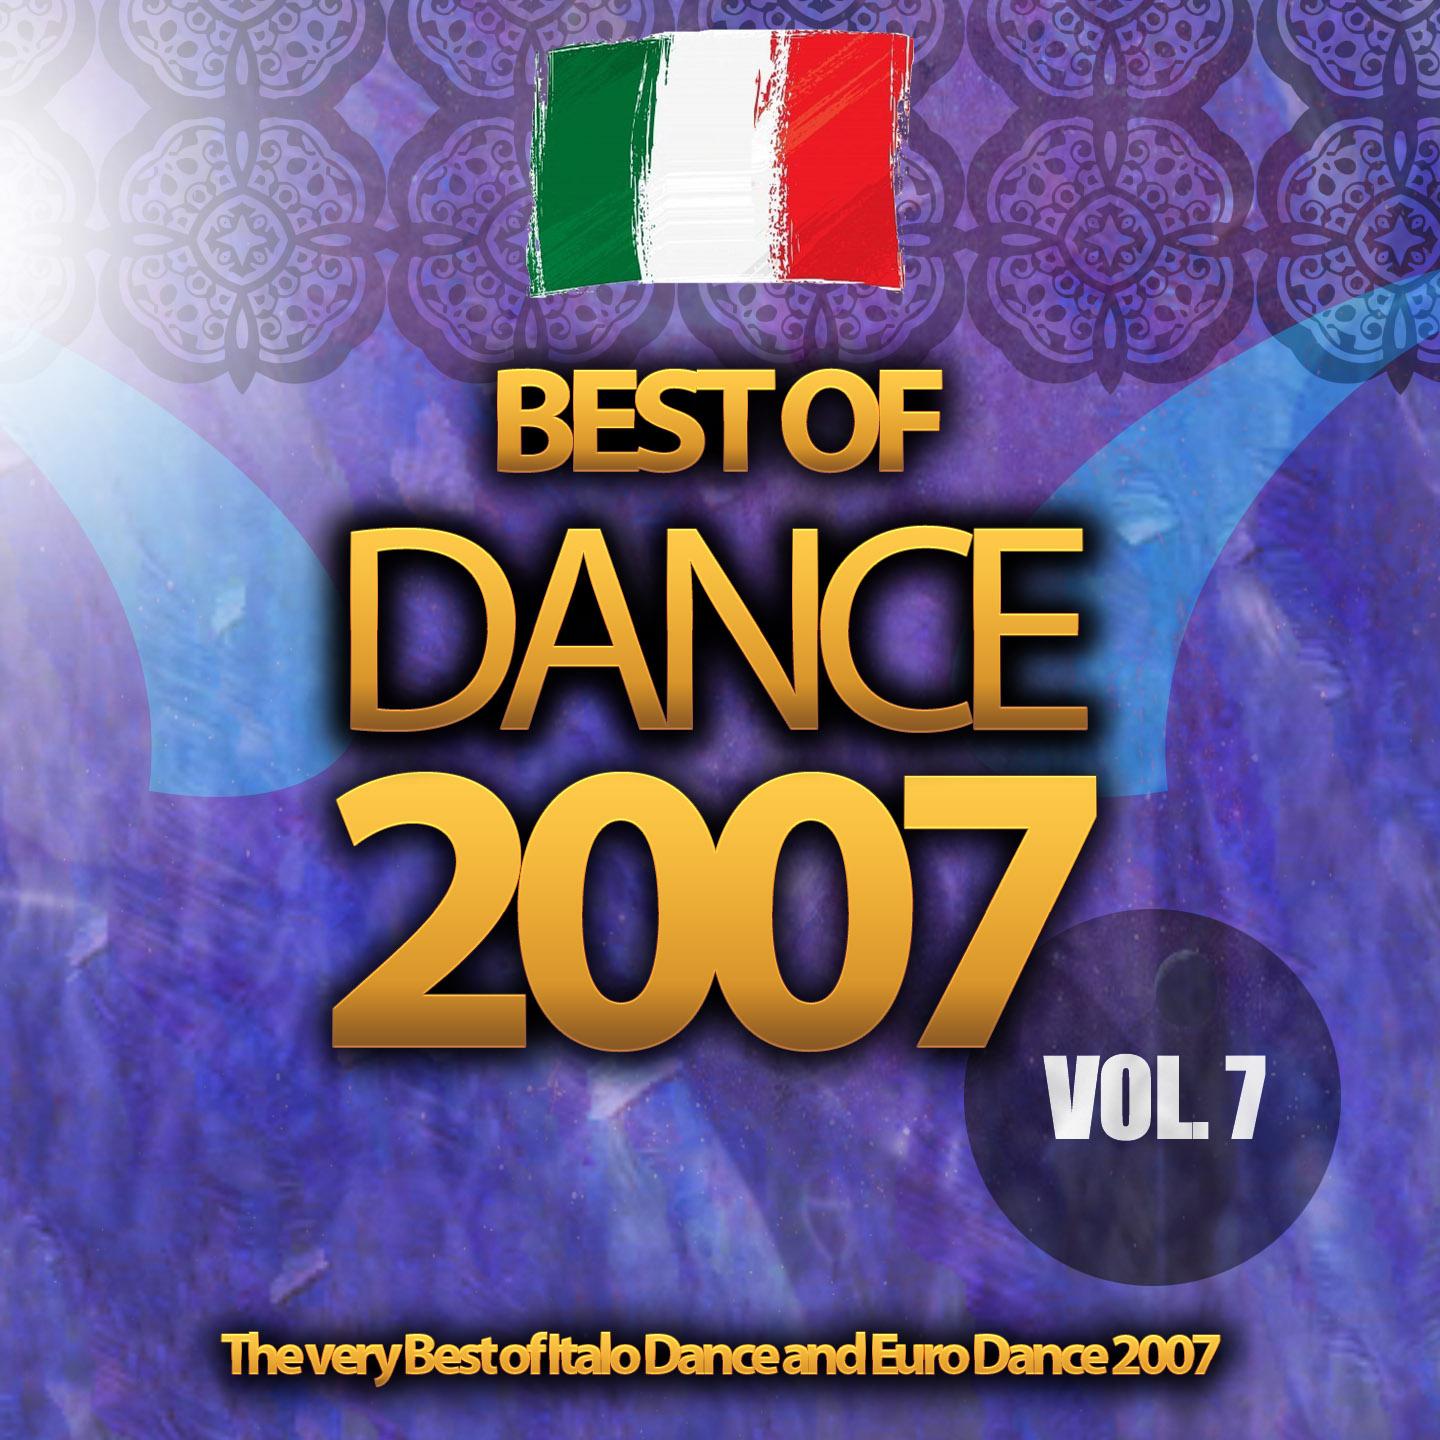 Best of Dance 2007, Vol. 7